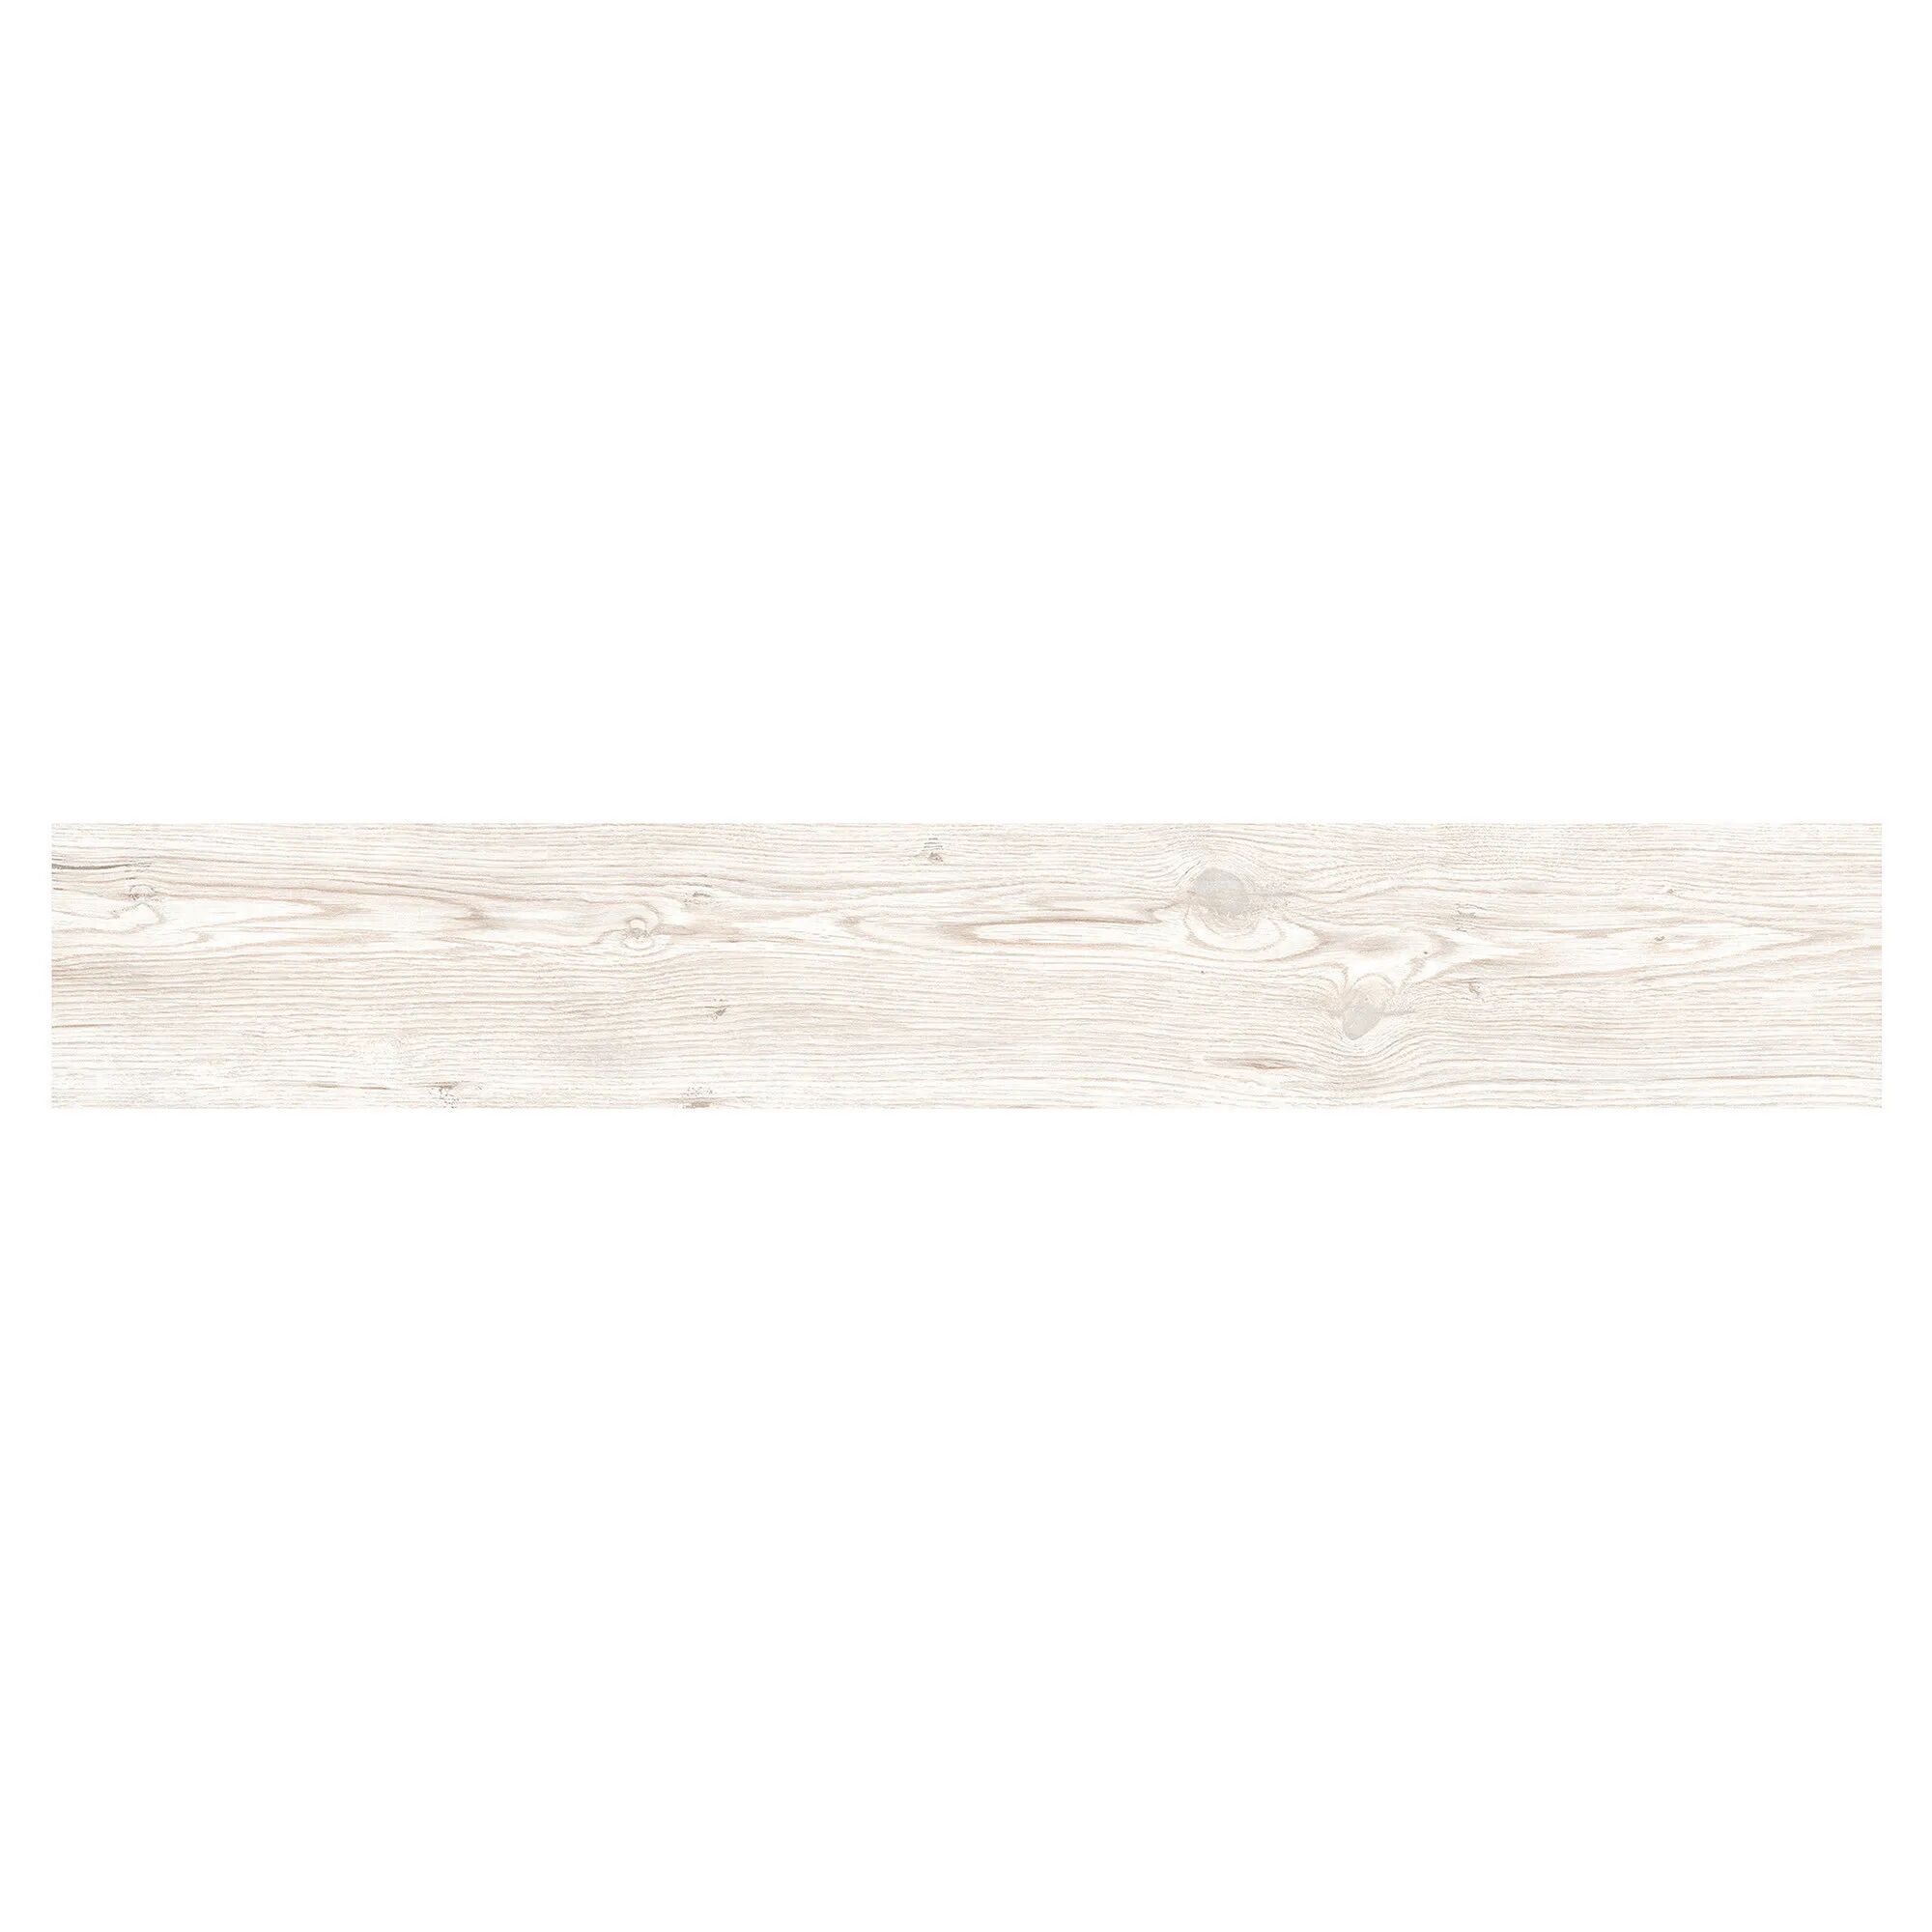 spray dry pavimento legno interno cembro bianco 15x100x1cm pei 5 r10 gres porcellanato